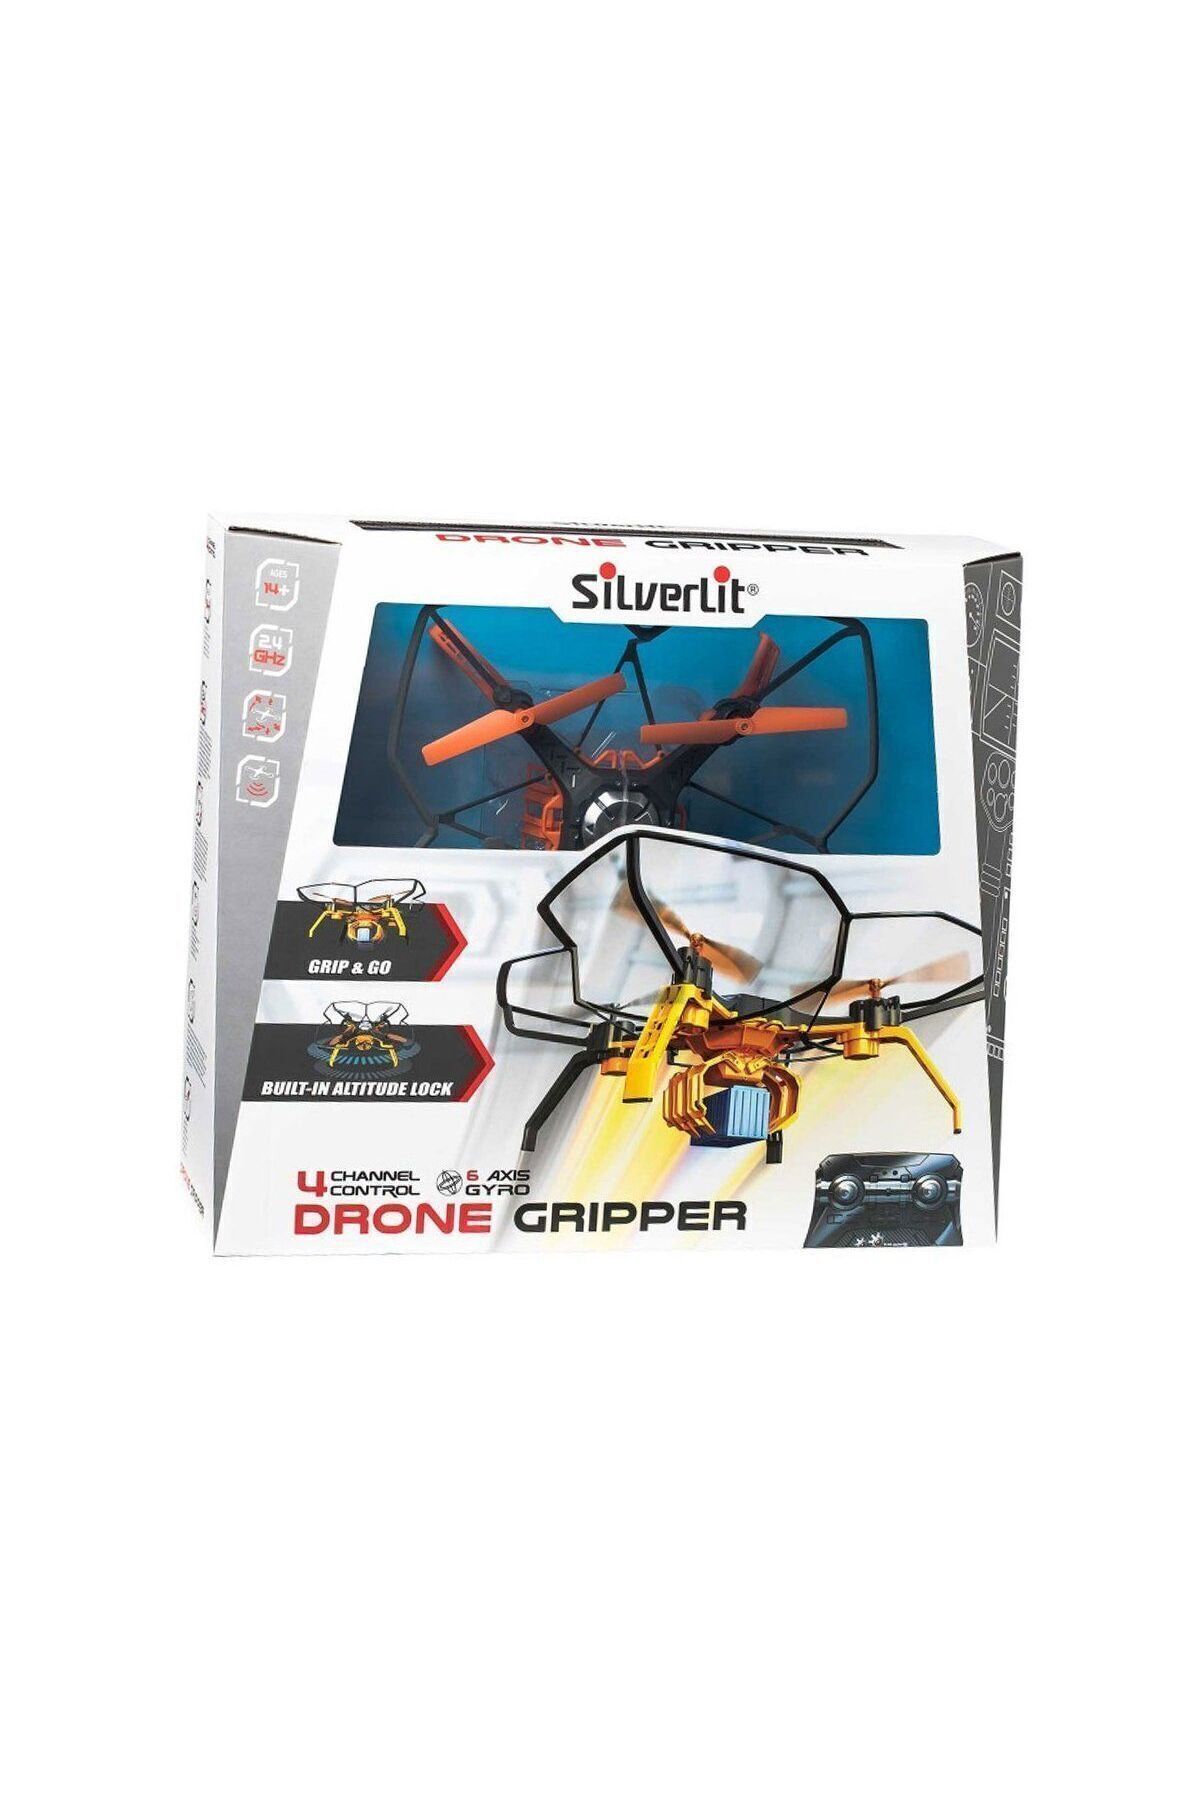 Muhcu Home Sıl/84785 Silverlit Drone Gripper 2.4g-4ch Gyro